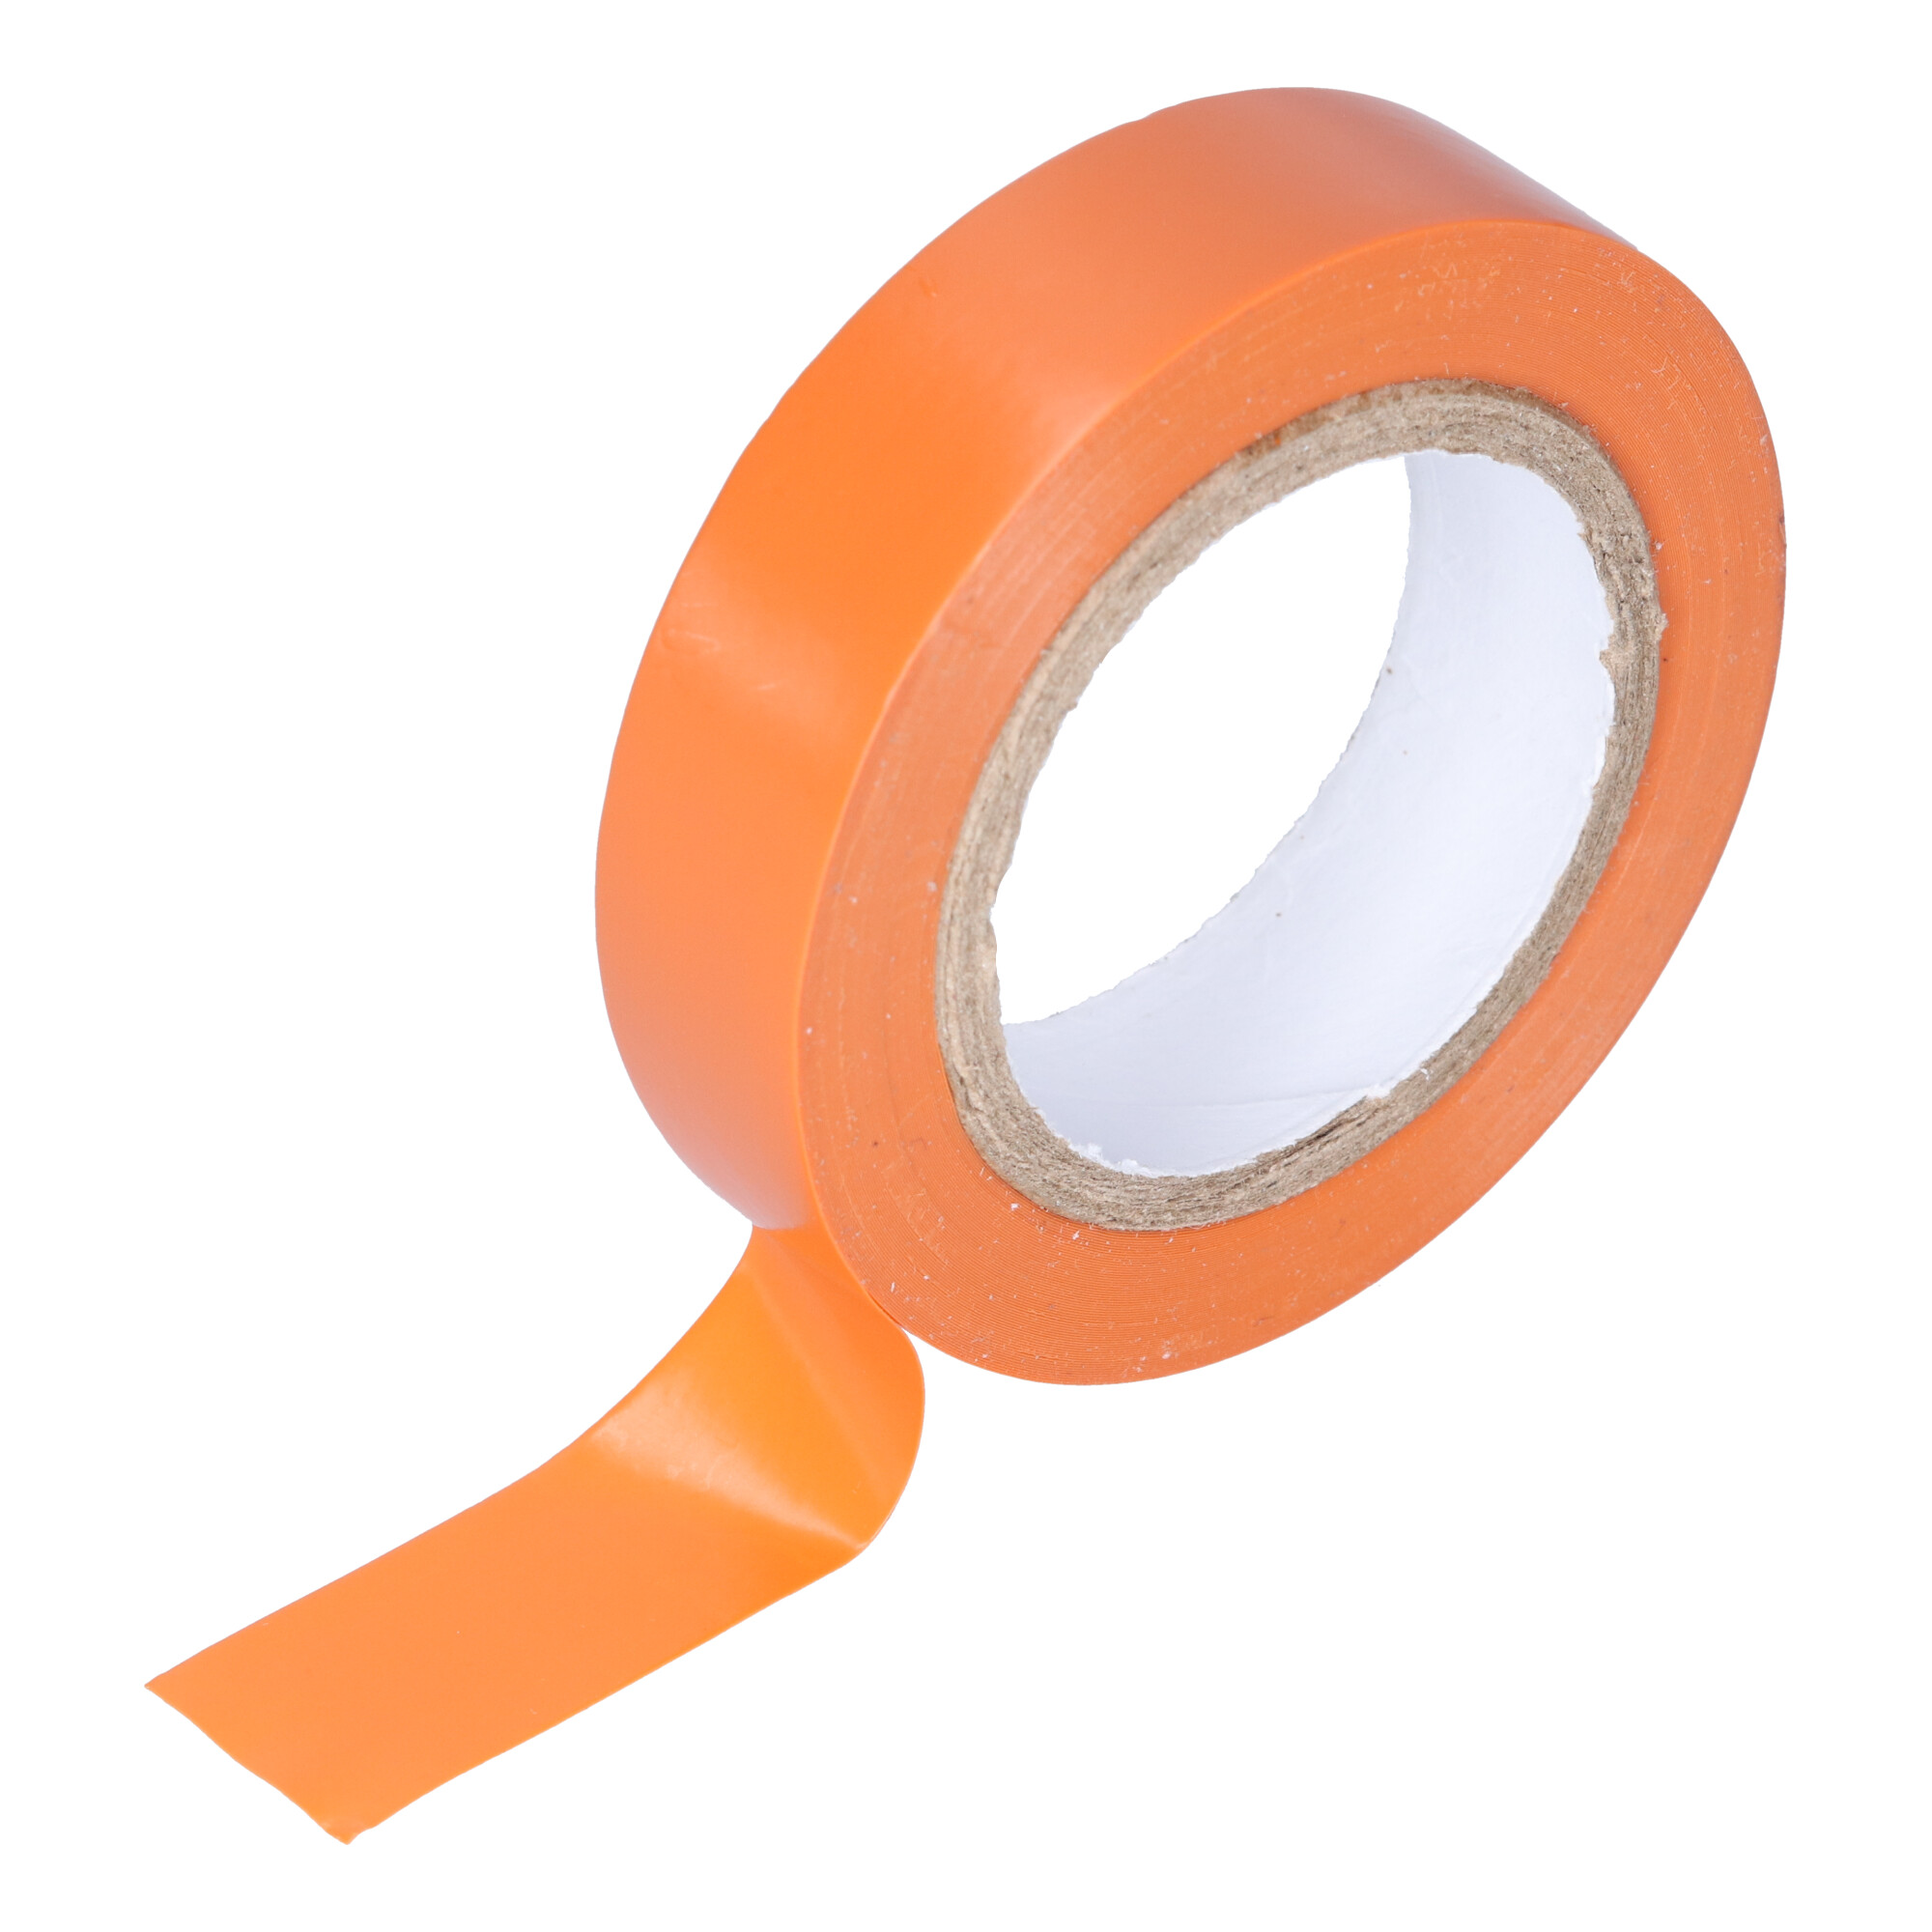 95-NI 20AR PVC adhesive tape